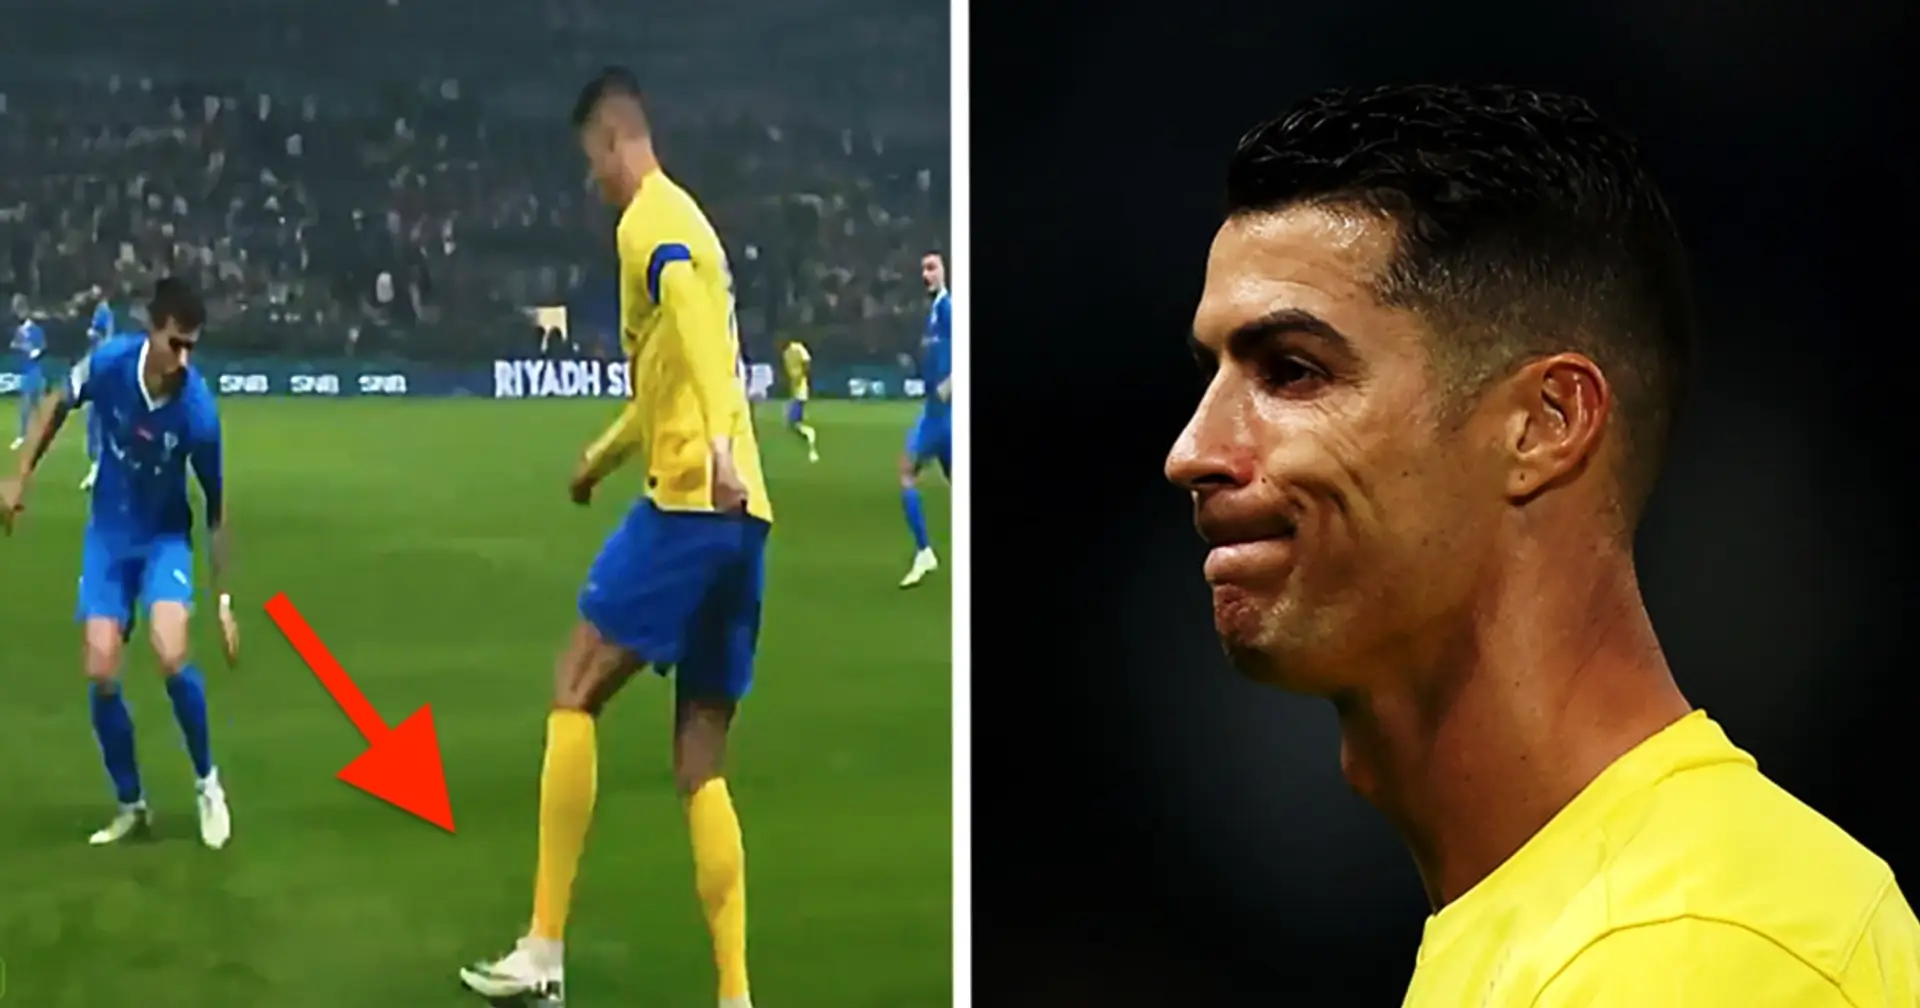 Ronaldo's unsuccessful dribble attempt against Al Hilal went viral, reaching 5 million views